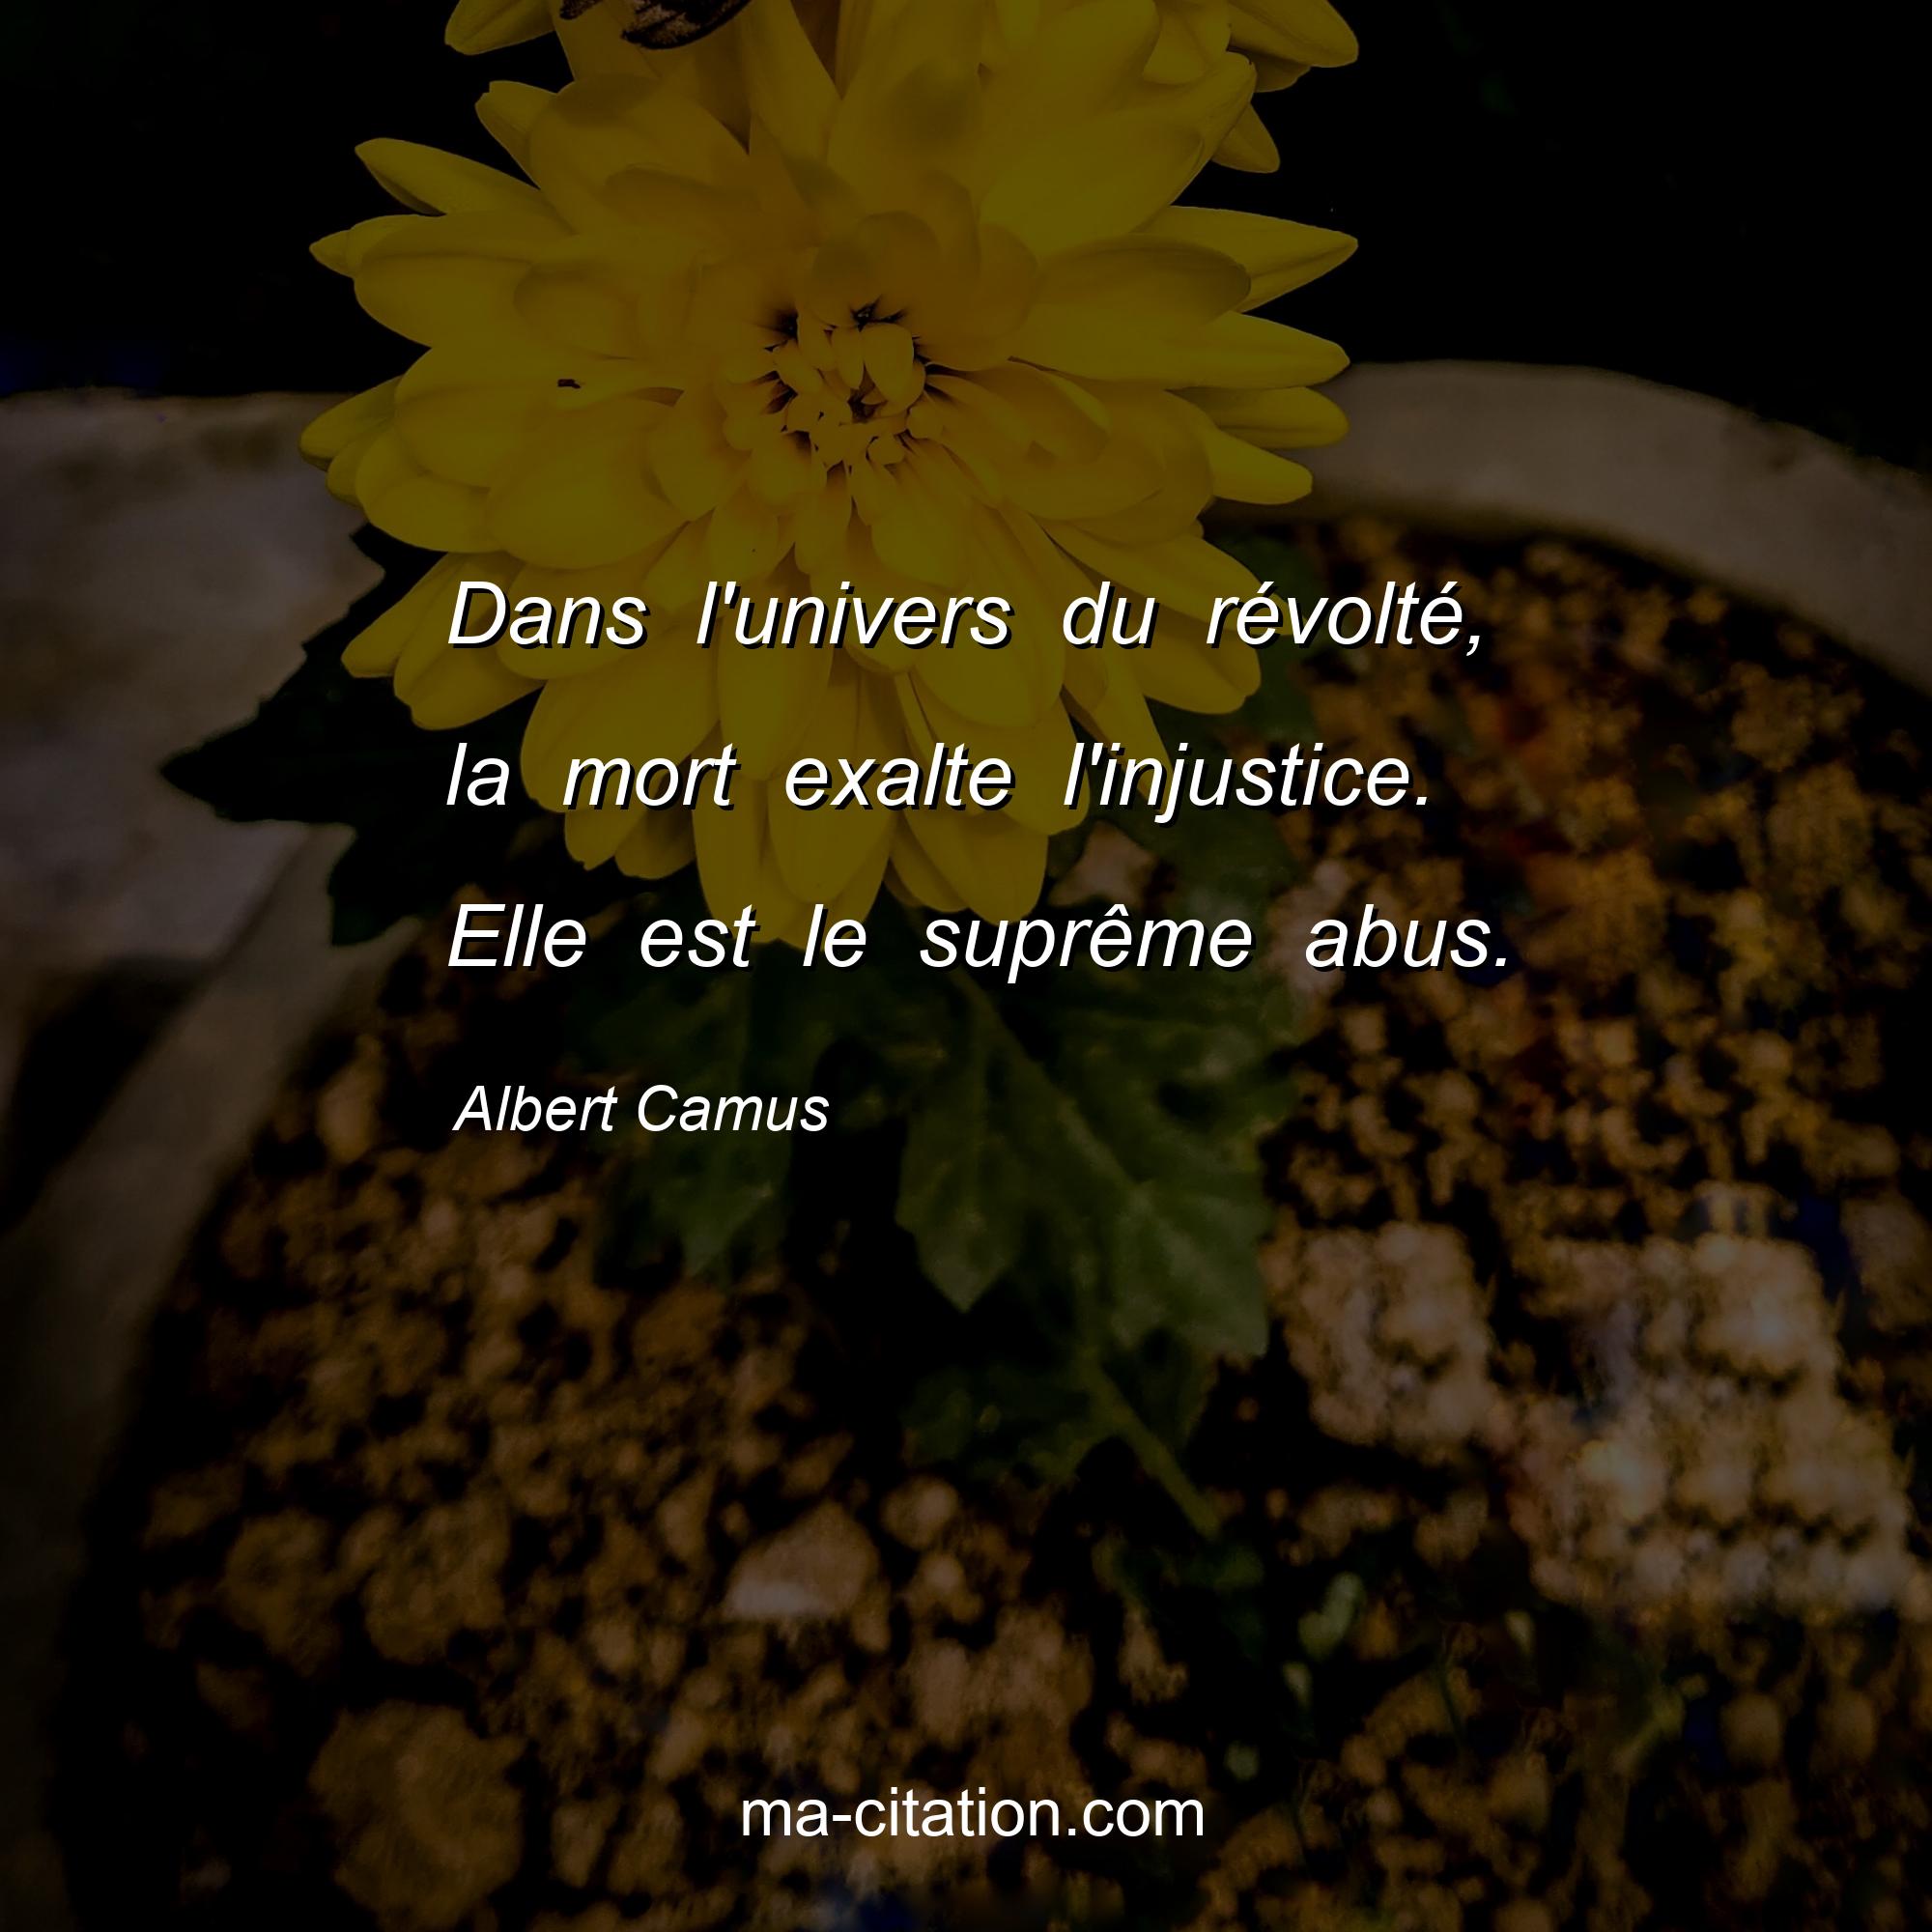 Albert Camus : Dans l'univers du révolté, la mort exalte l'injustice. Elle est le suprême abus.